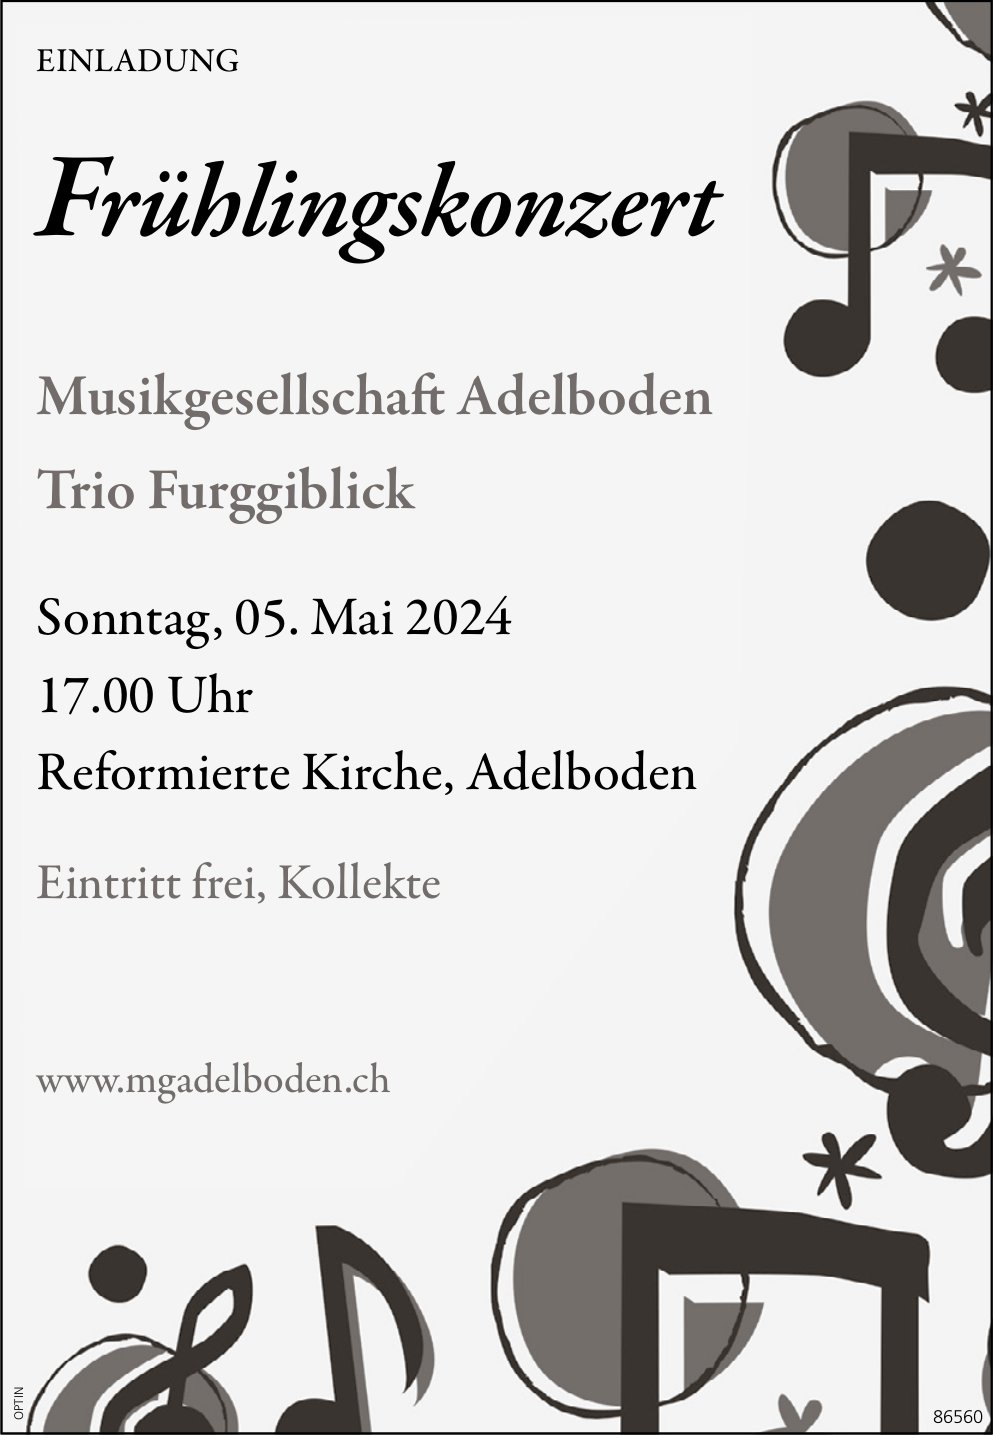 Frühlingskonzert Musikgesellschaft, 5. Mai, Ref. Kirche, Adelboden